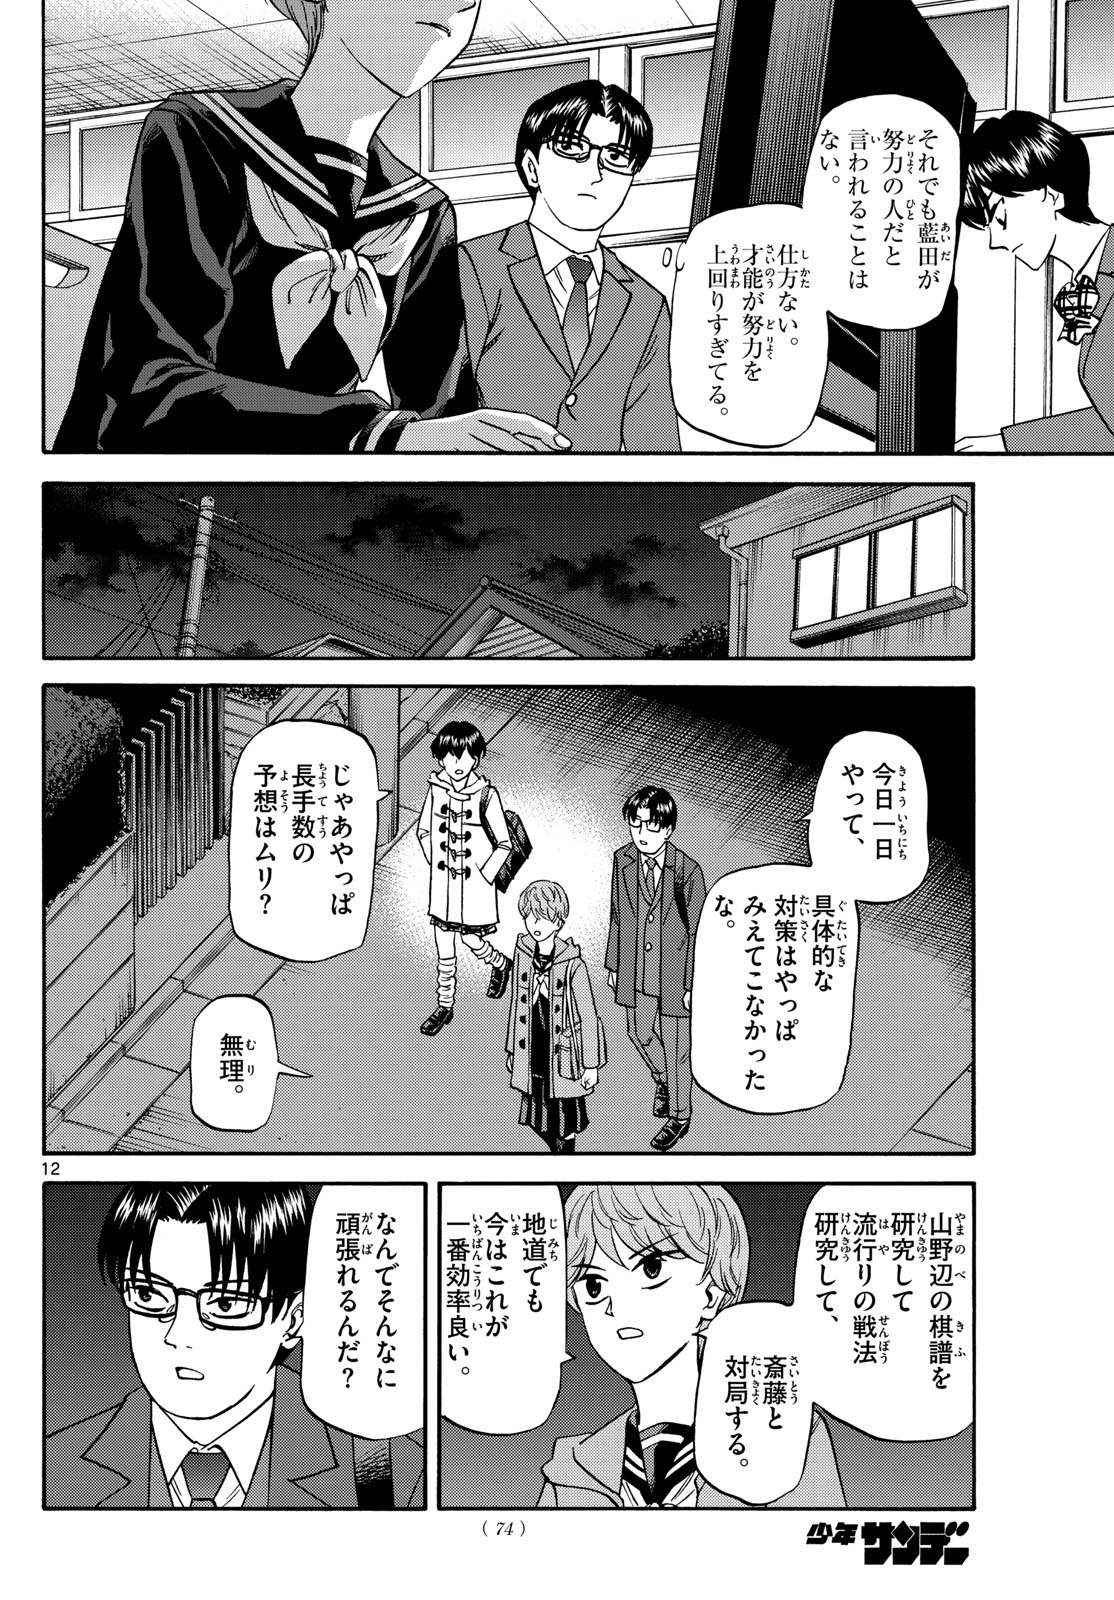 Tatsu to Ichigo - Chapter 171 - Page 12